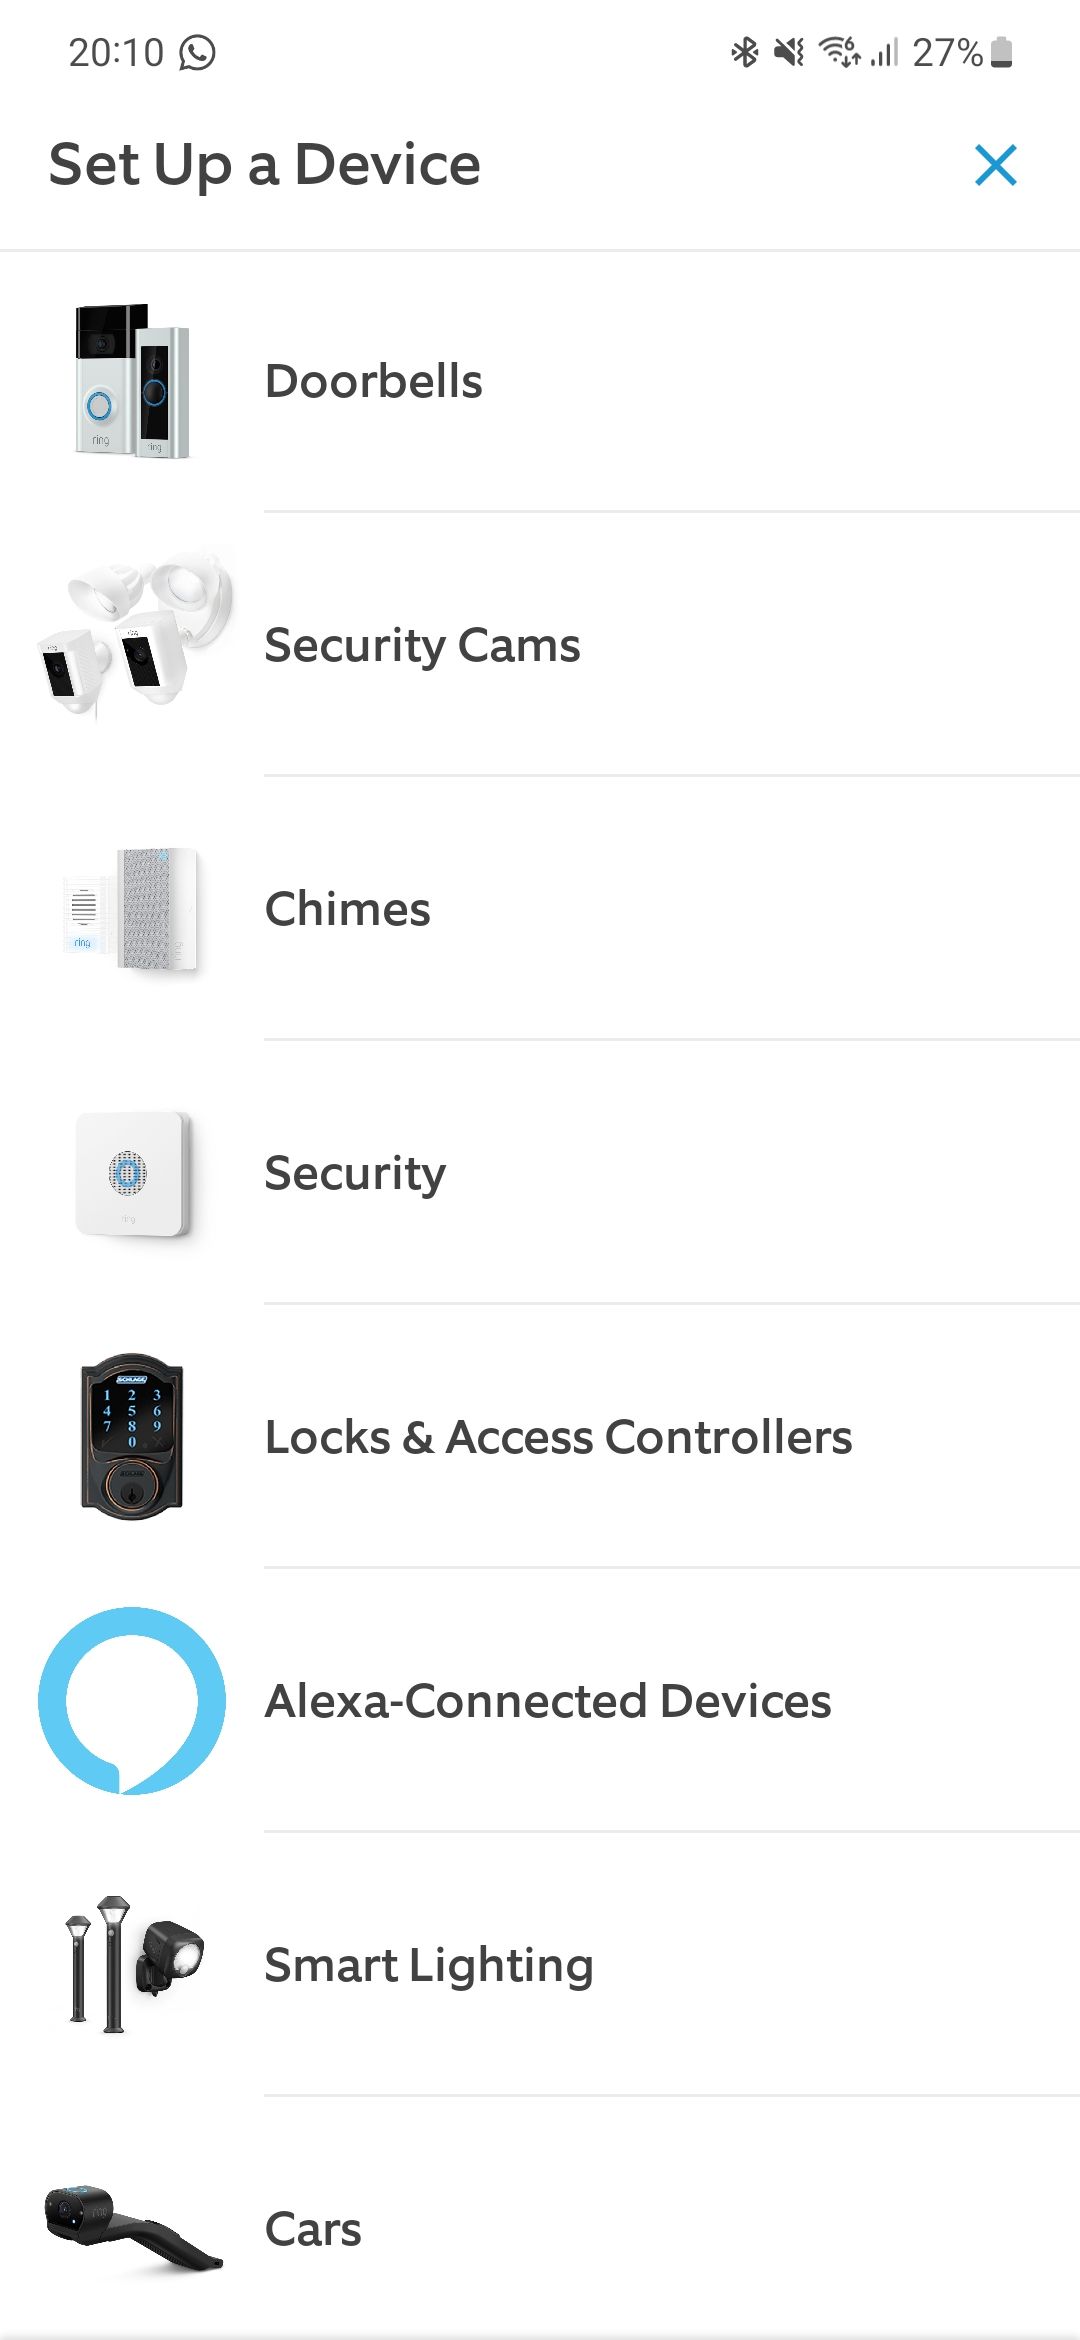 Captura de tela do aplicativo Ring mostrando a lista de dispositivos para configurar